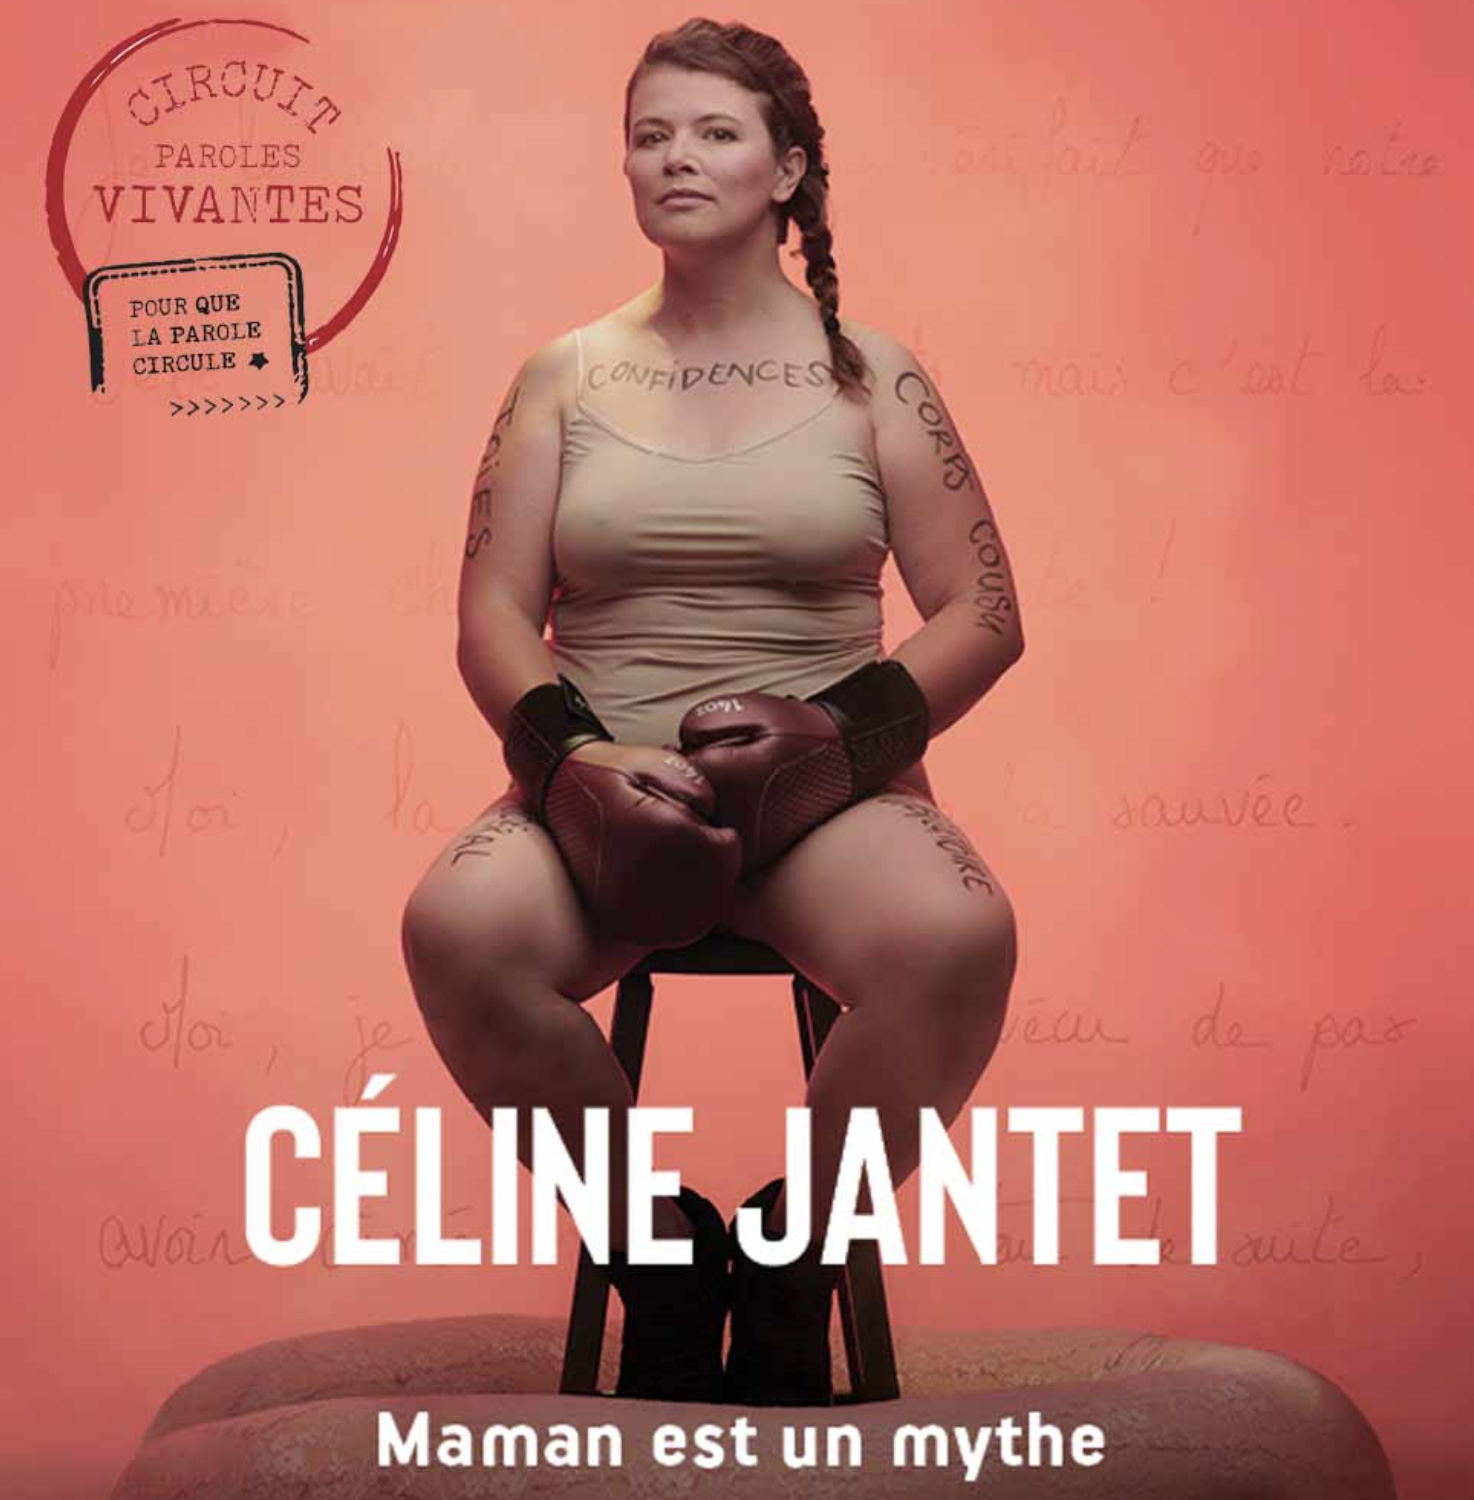 CÉLINE JANTET – MAMAN EST UN MYTHE – CONTE FÉMINISTE